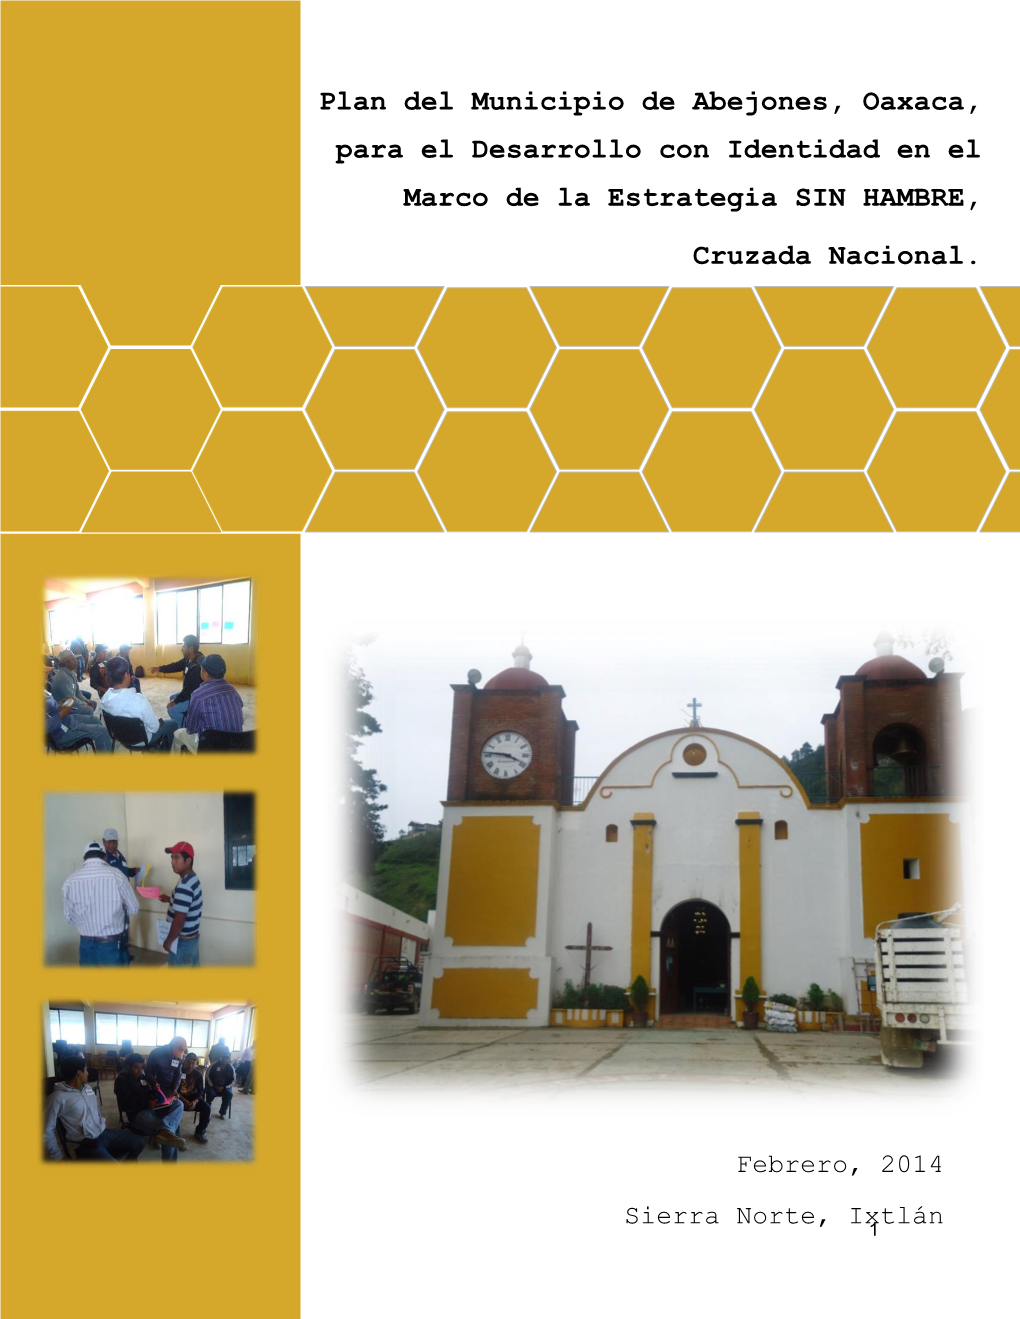 Plan Del Municipio De Abejones Para El Desarrollo Con Identidad, En El Marco De La Estrategia SIN HAMBRE, Cruzada Nacional Plan Del Municipio De Abejones, Oaxaca